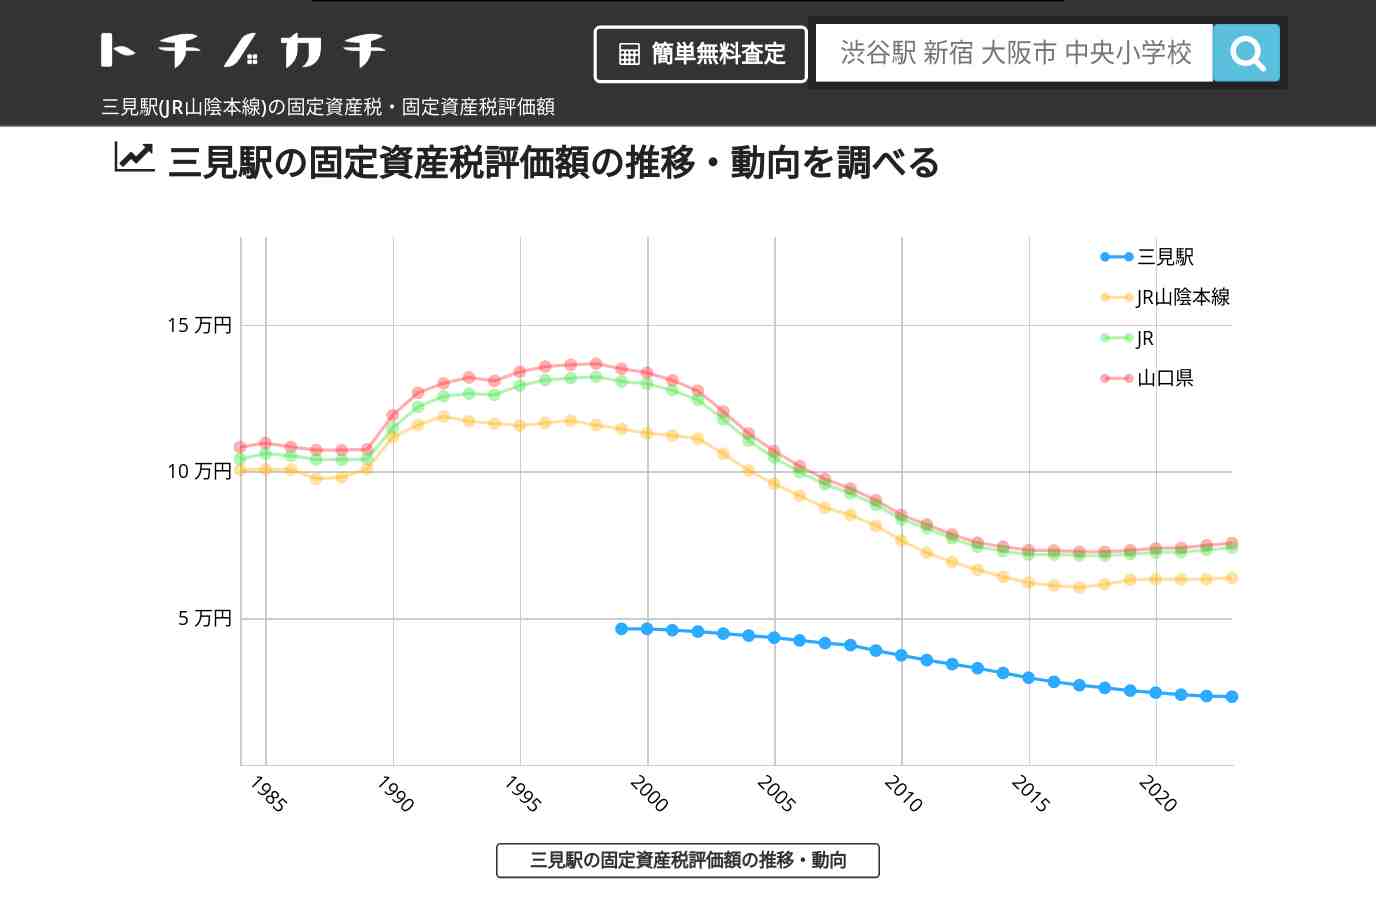 三見駅(JR山陰本線)の固定資産税・固定資産税評価額 | トチノカチ